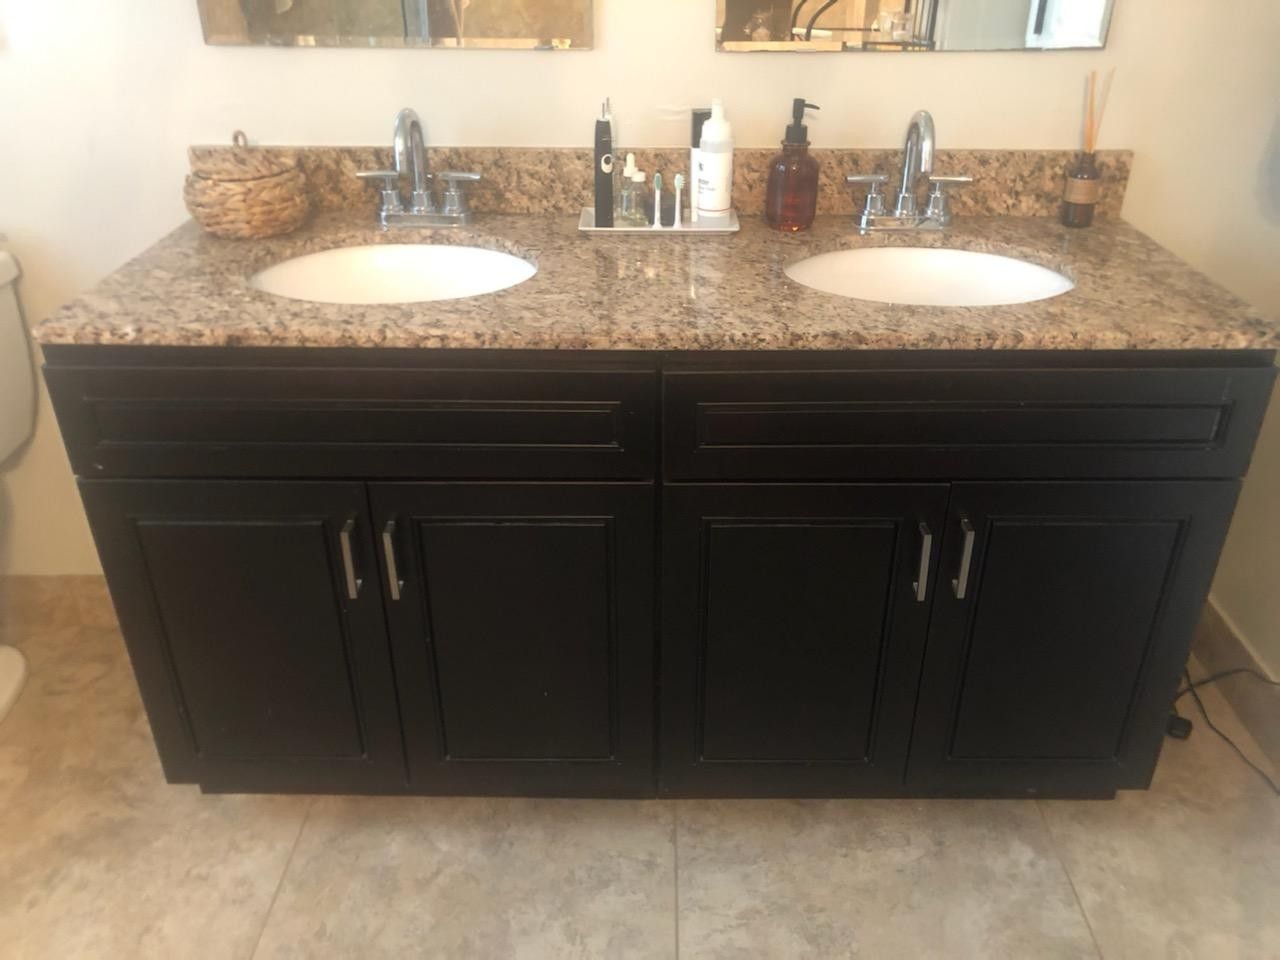 Dual sink vanity with granite countertop & sinks